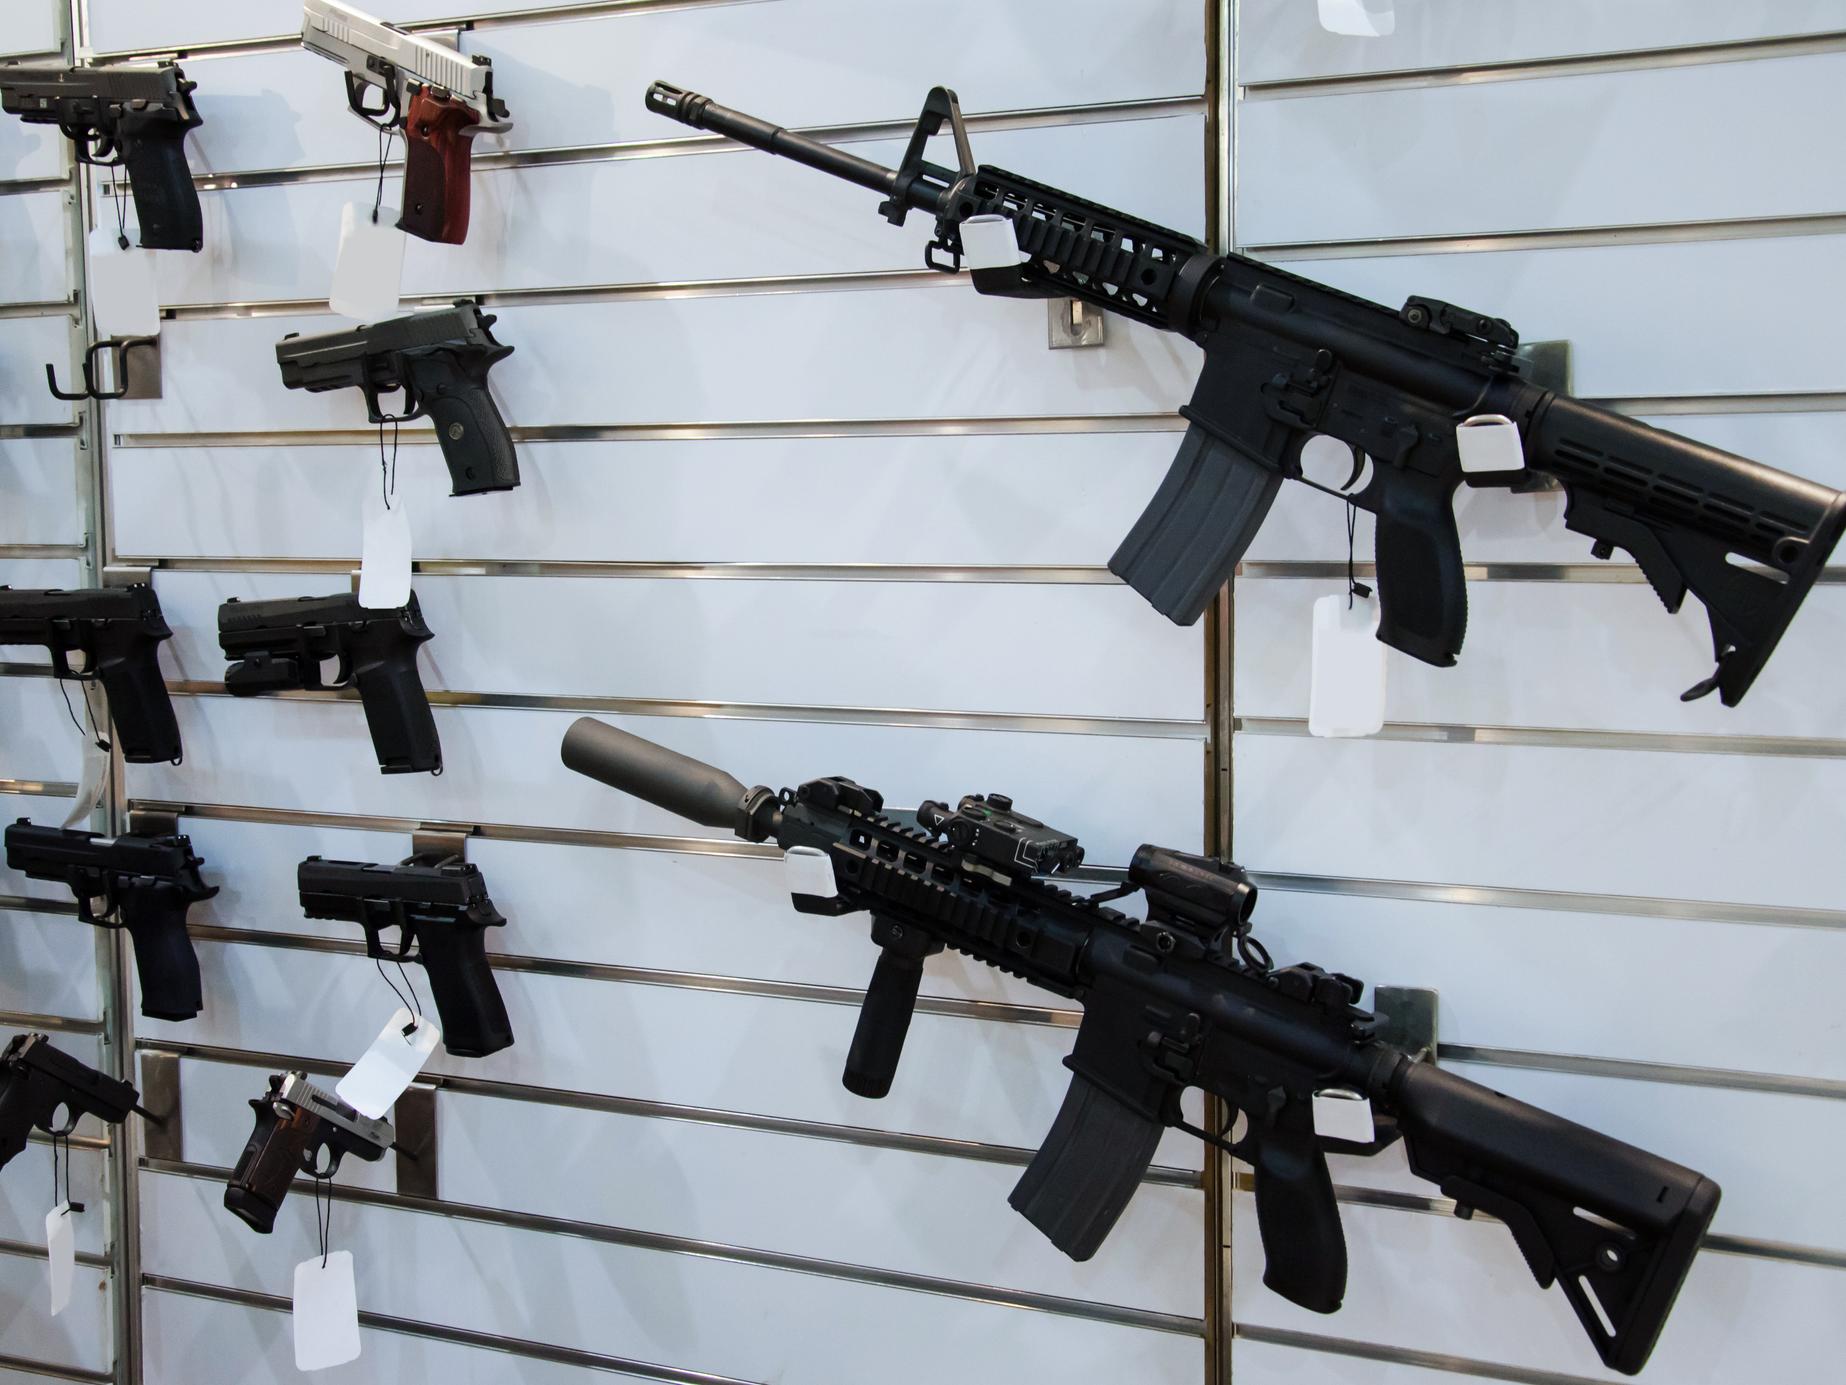 Guns hang on a wall in a gun store